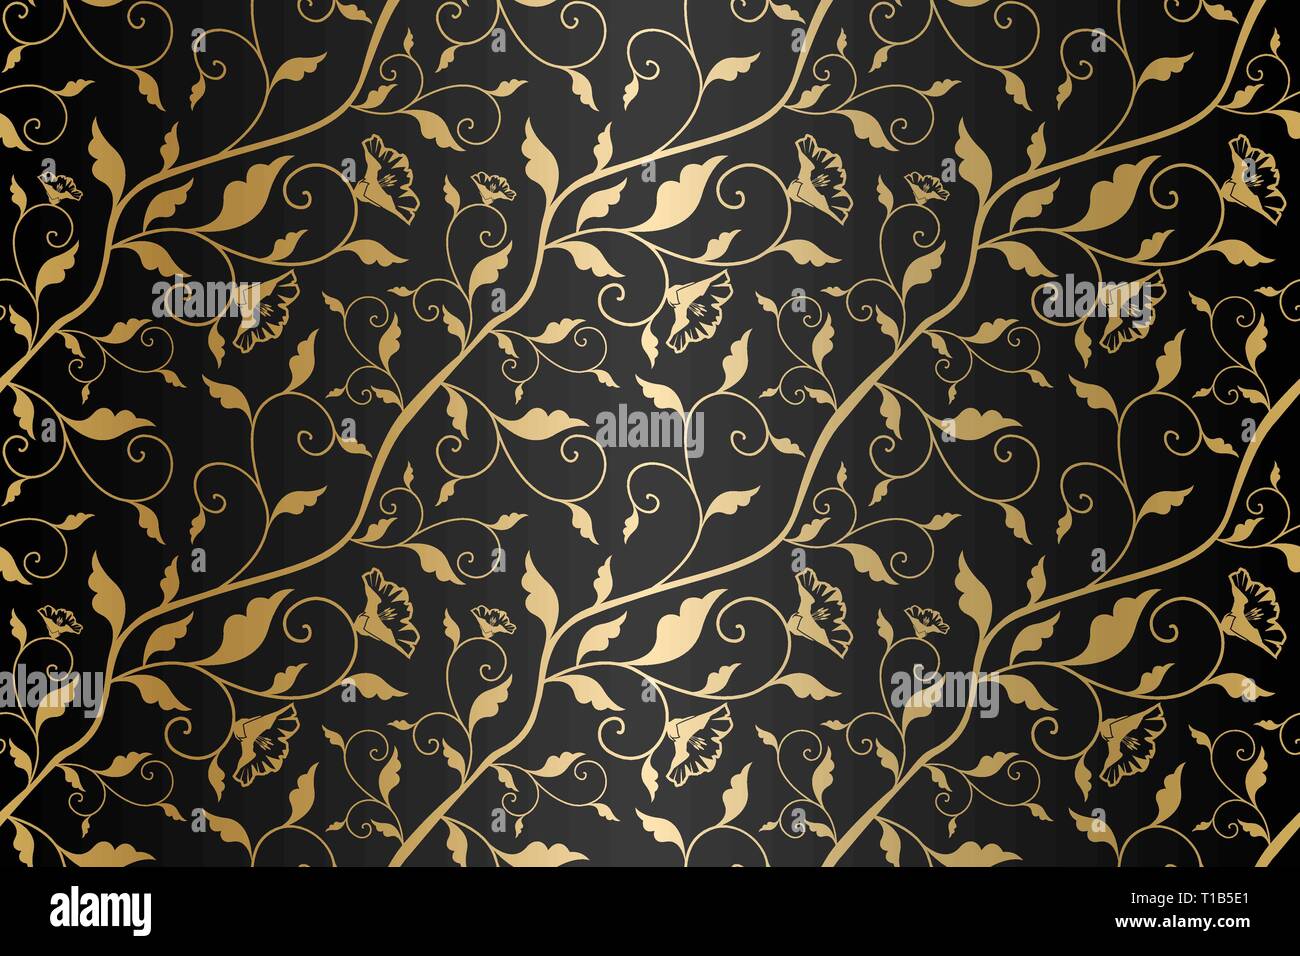 Die nahtlose Vektor golden Textur floralen Muster. Luxus wiederholen Damast schwarzen Hintergrund. Premium Verpackung Papier oder Seide gold Stoff mit Blätter Stock Vektor